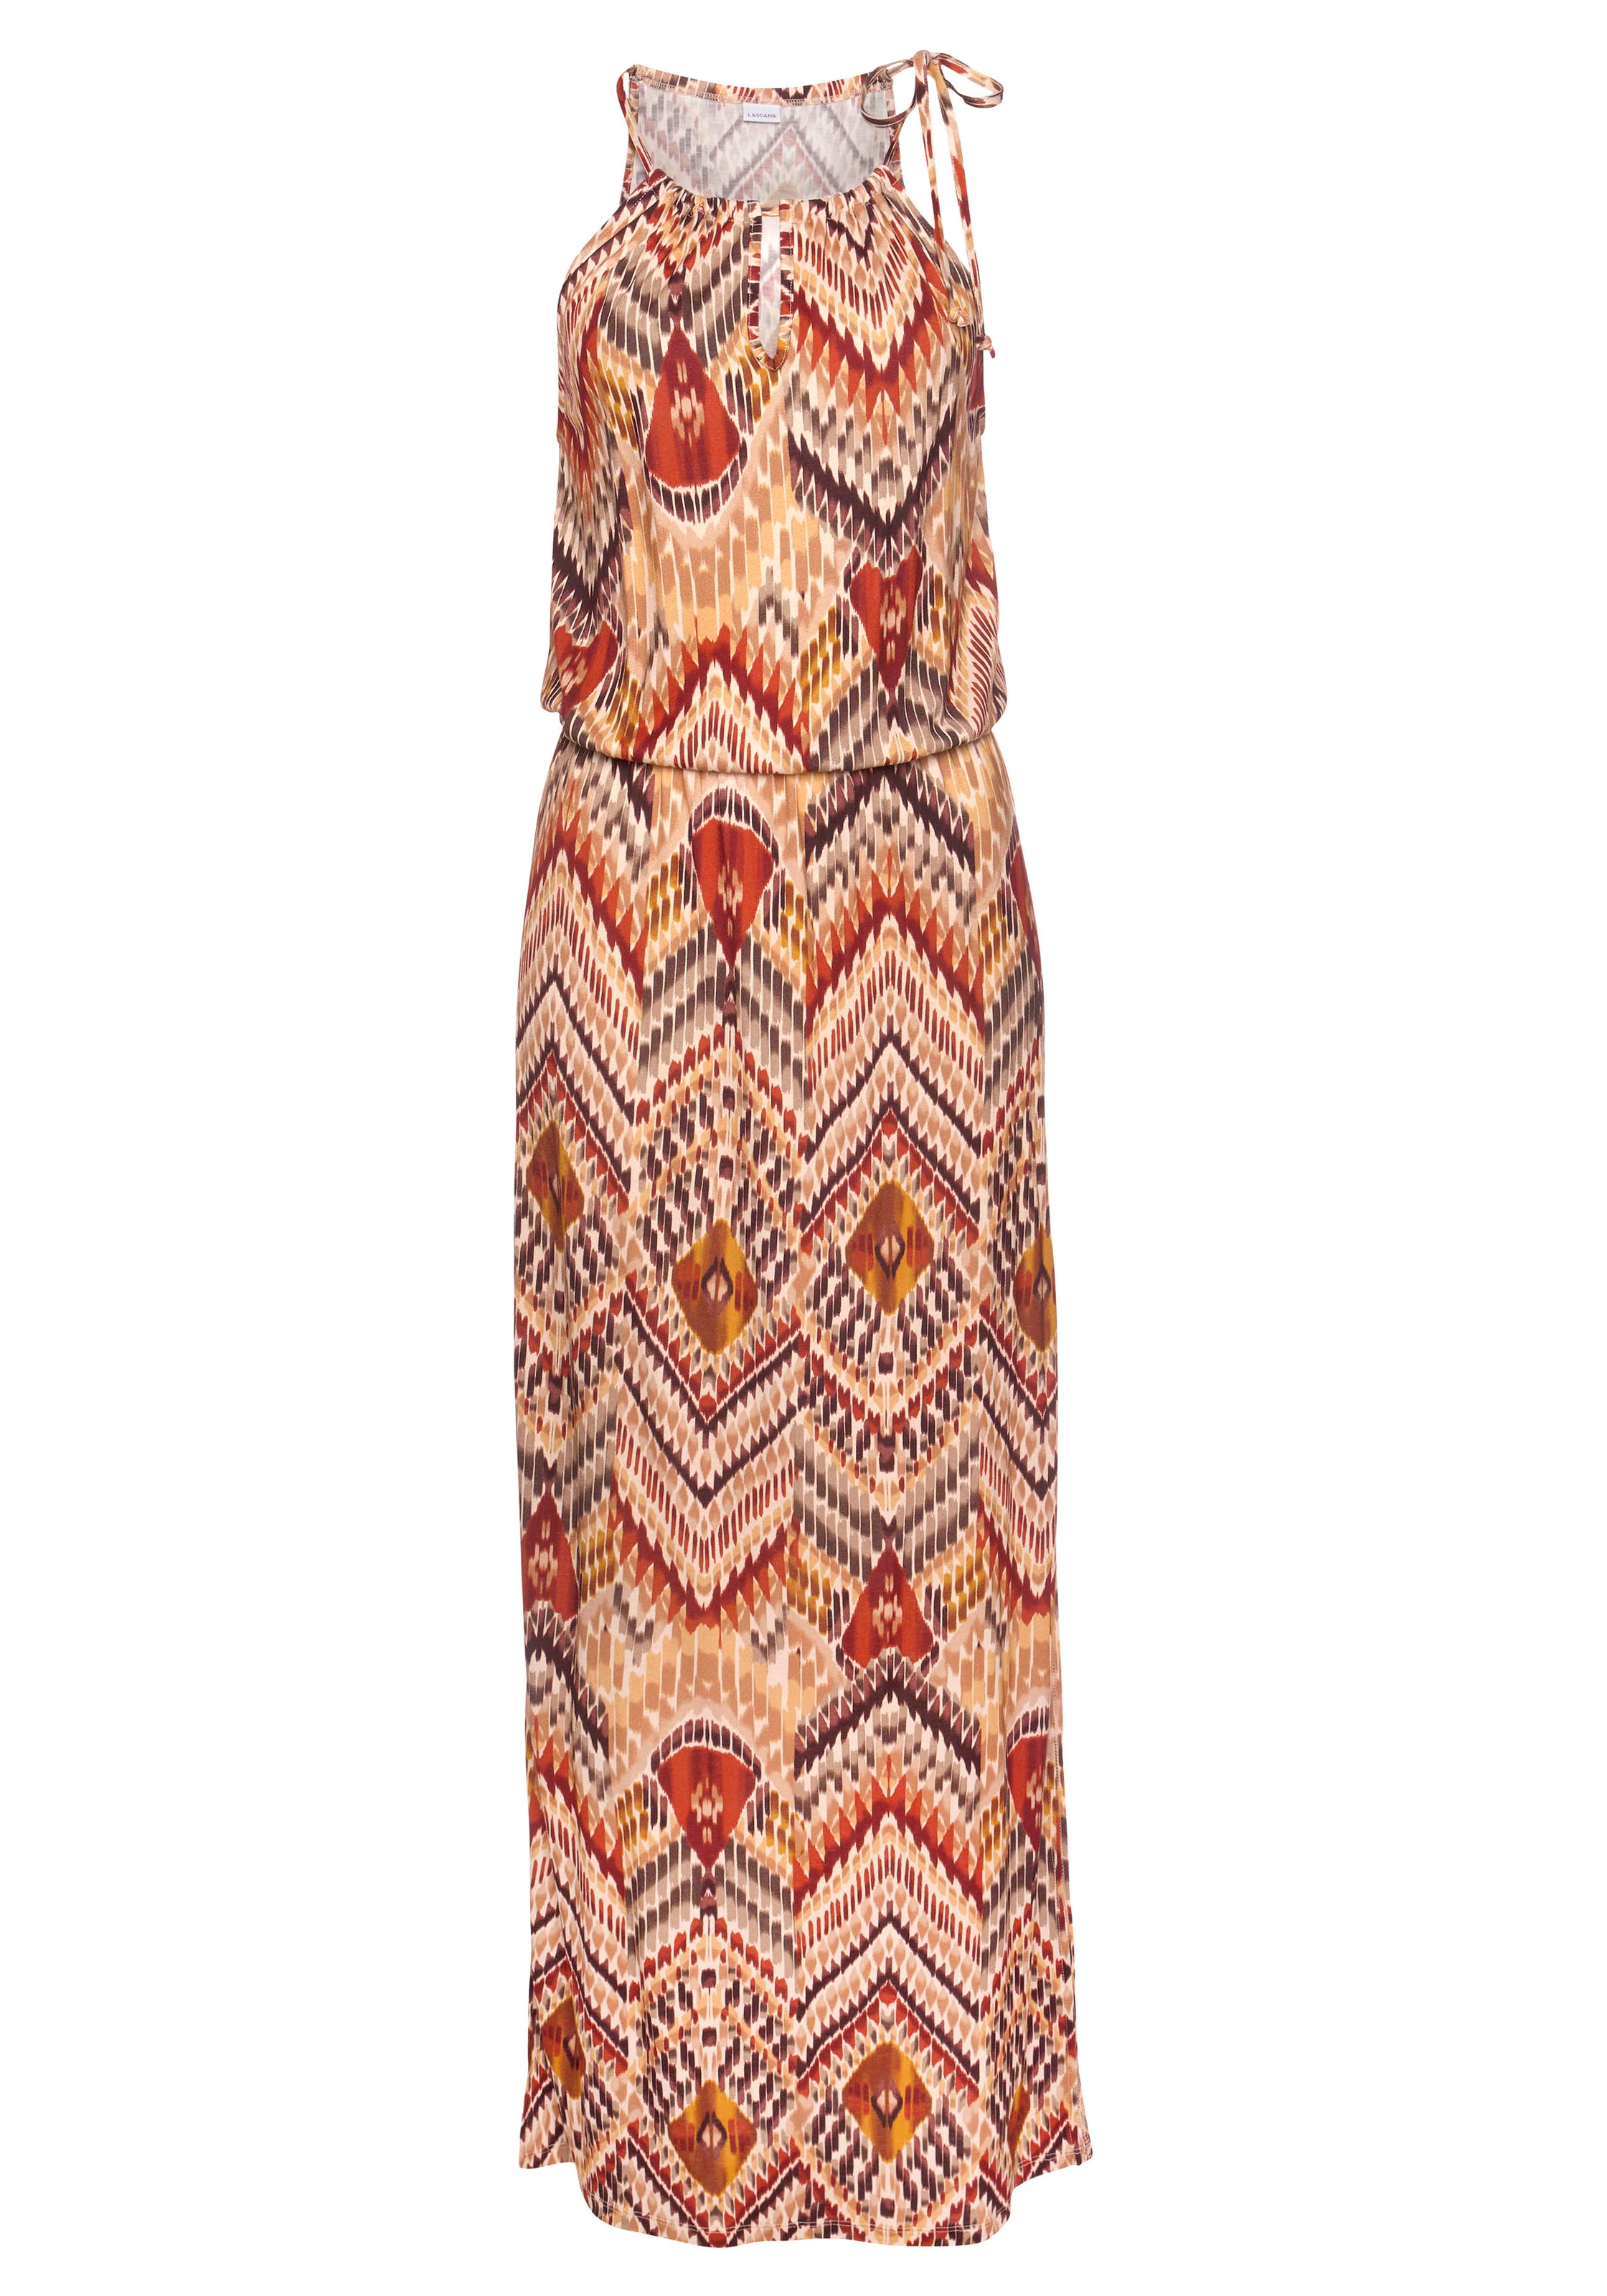 LASCANA Maxikleid, mit modischem Ausschnitt im Ethnoprint, Sommerkleid, Strandkleid